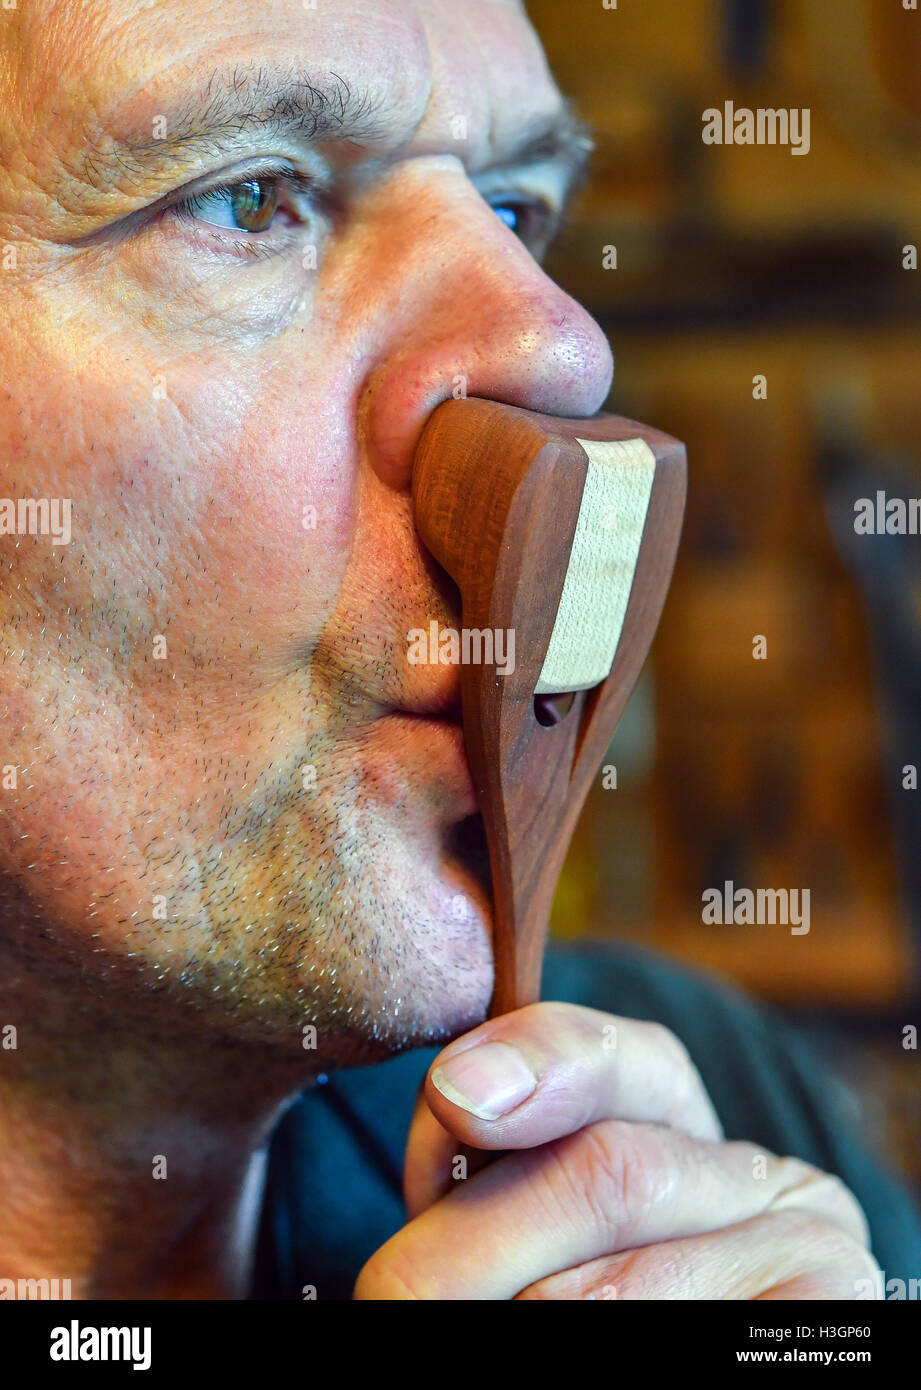 Flauto al naso immagini e fotografie stock ad alta risoluzione - Alamy